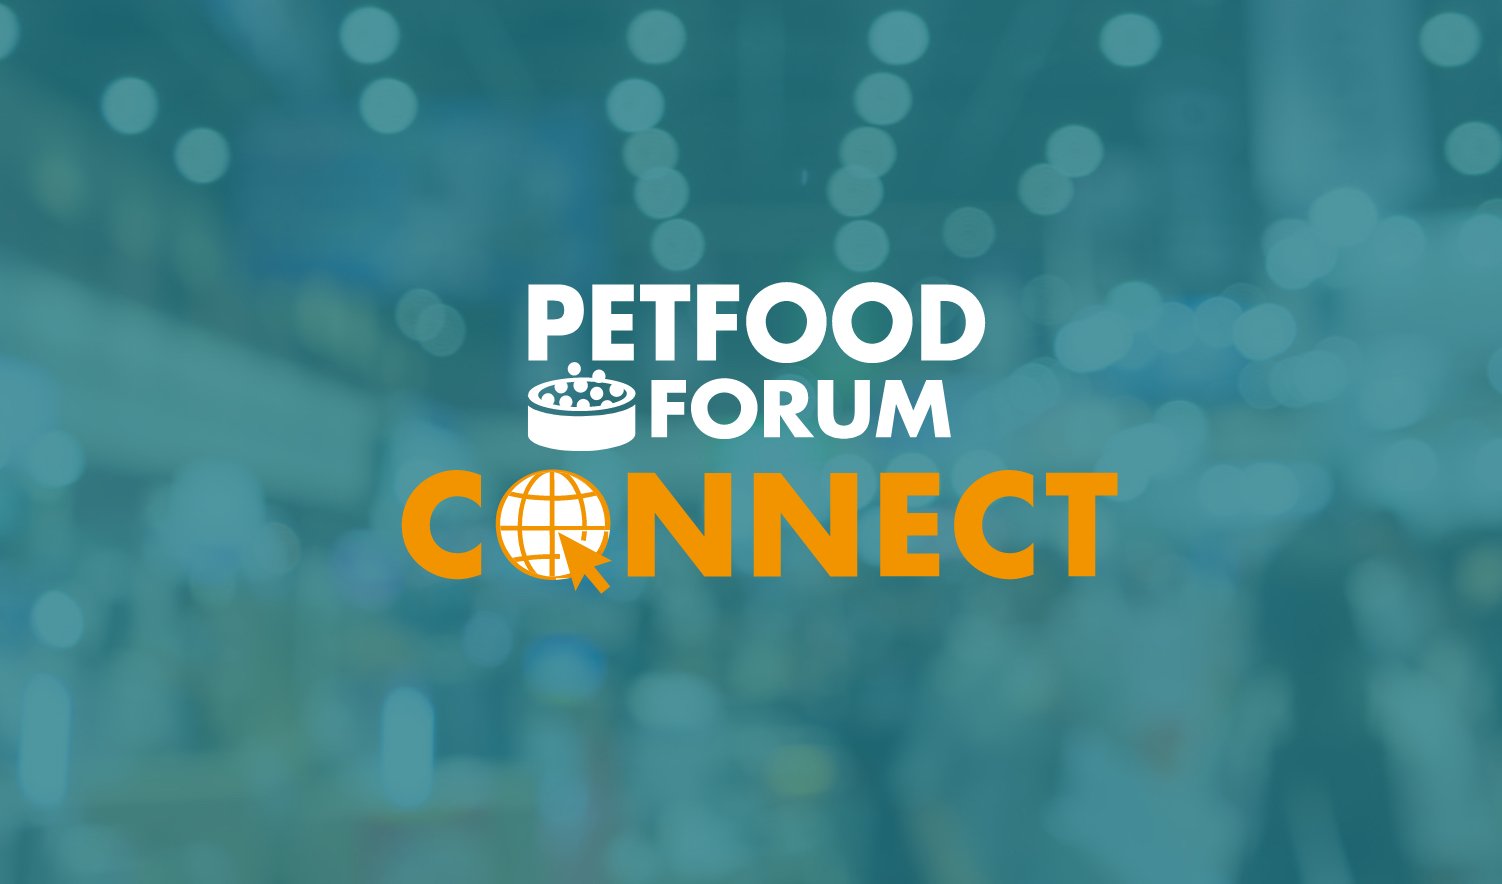 Petfood Forum Connect